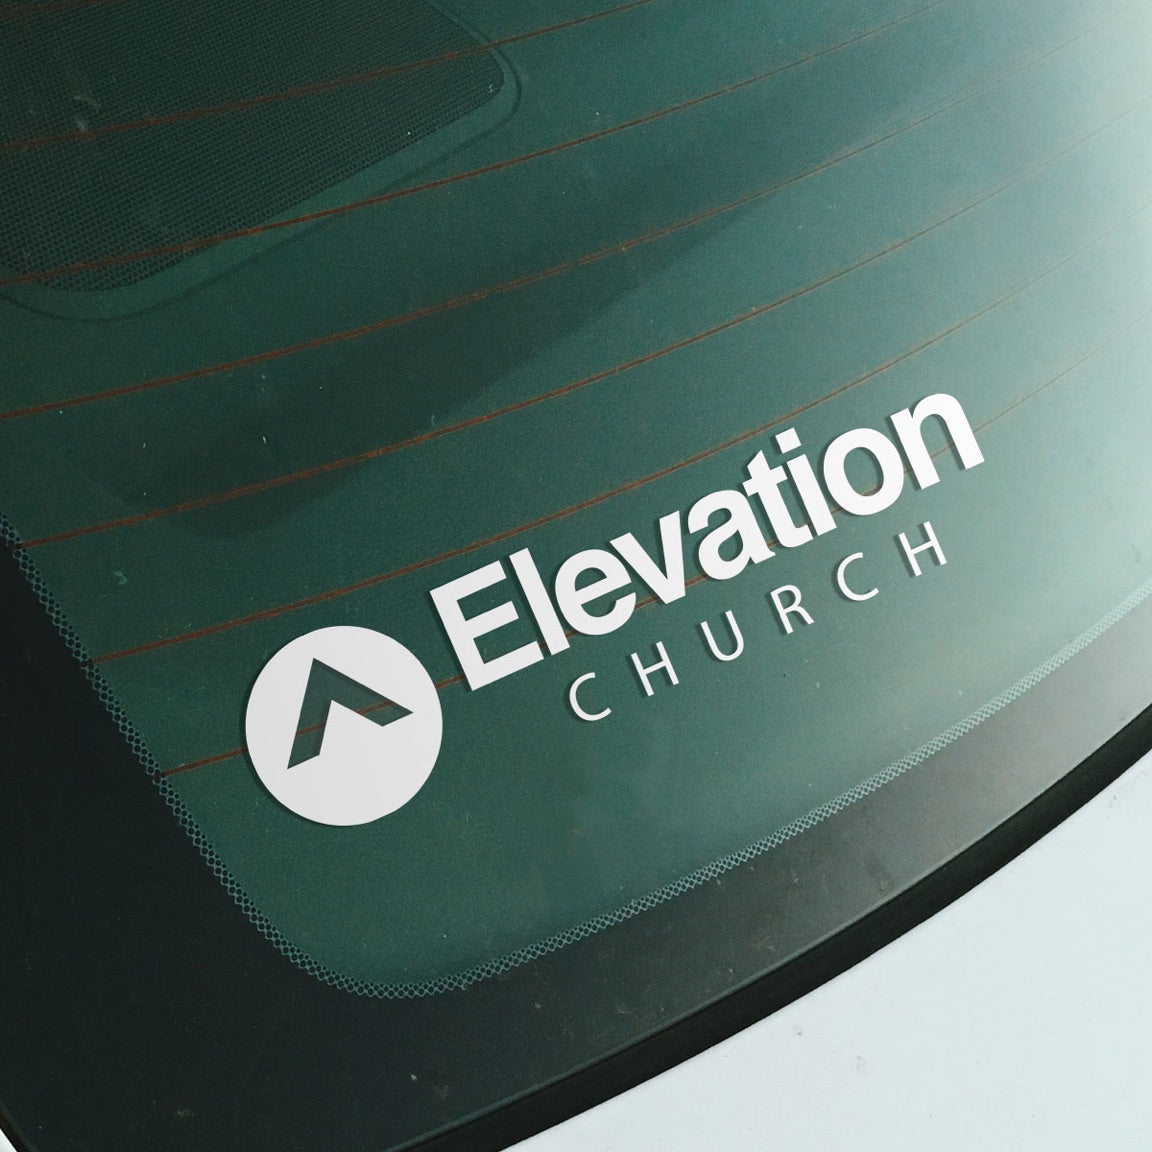 Elevation Church Car Decal